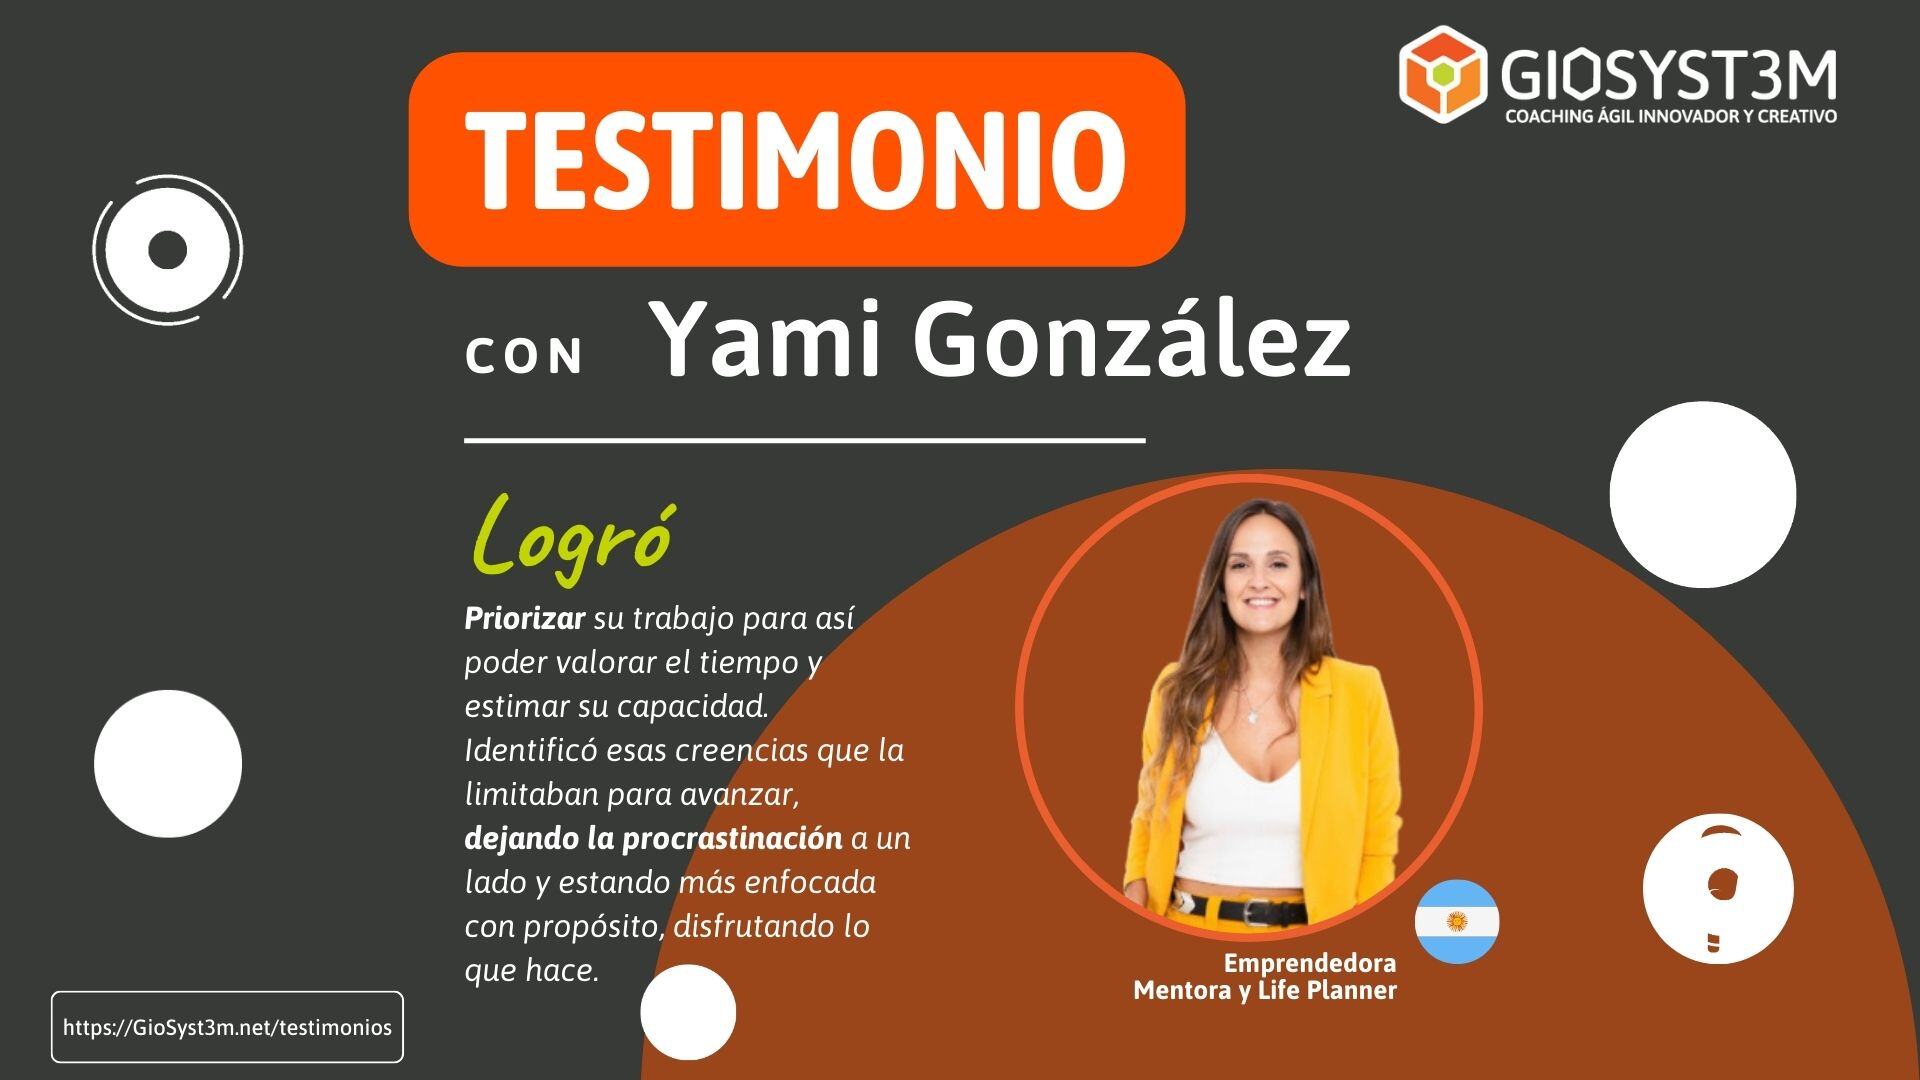 Testimonio: Yami González - GioSyst3m